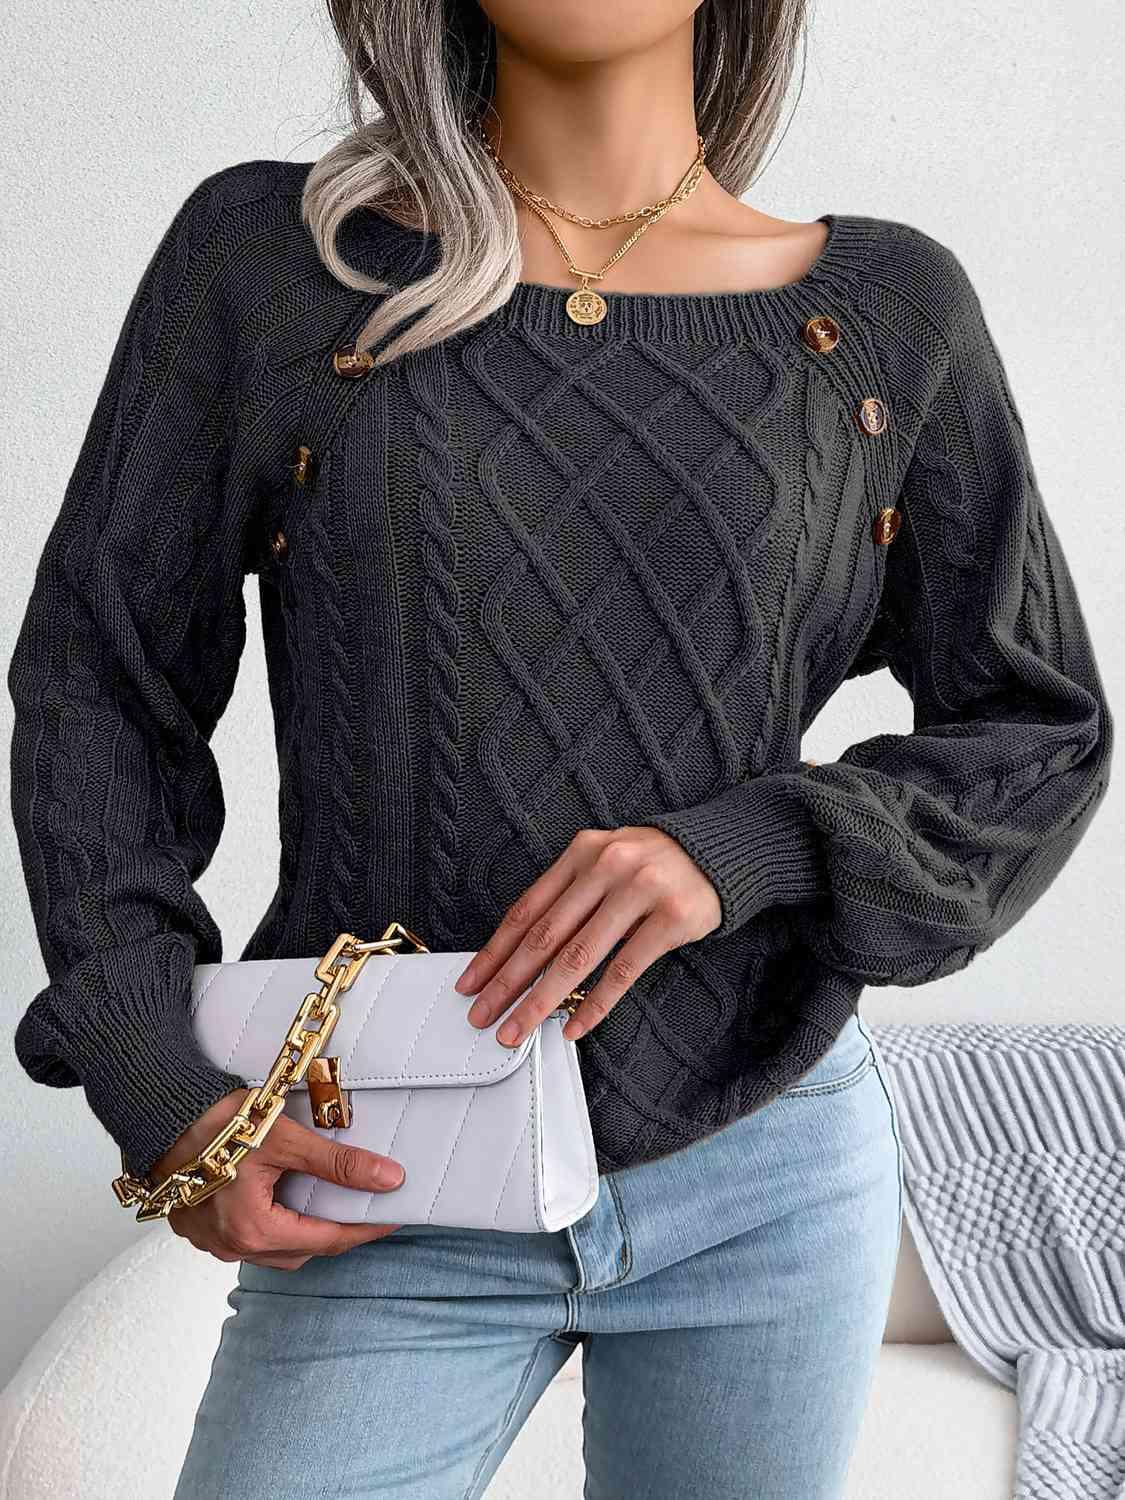 Bona Fide Fashion - Decorative Button Cable-Knit Sweater - Women Fashion - Bona Fide Fashion